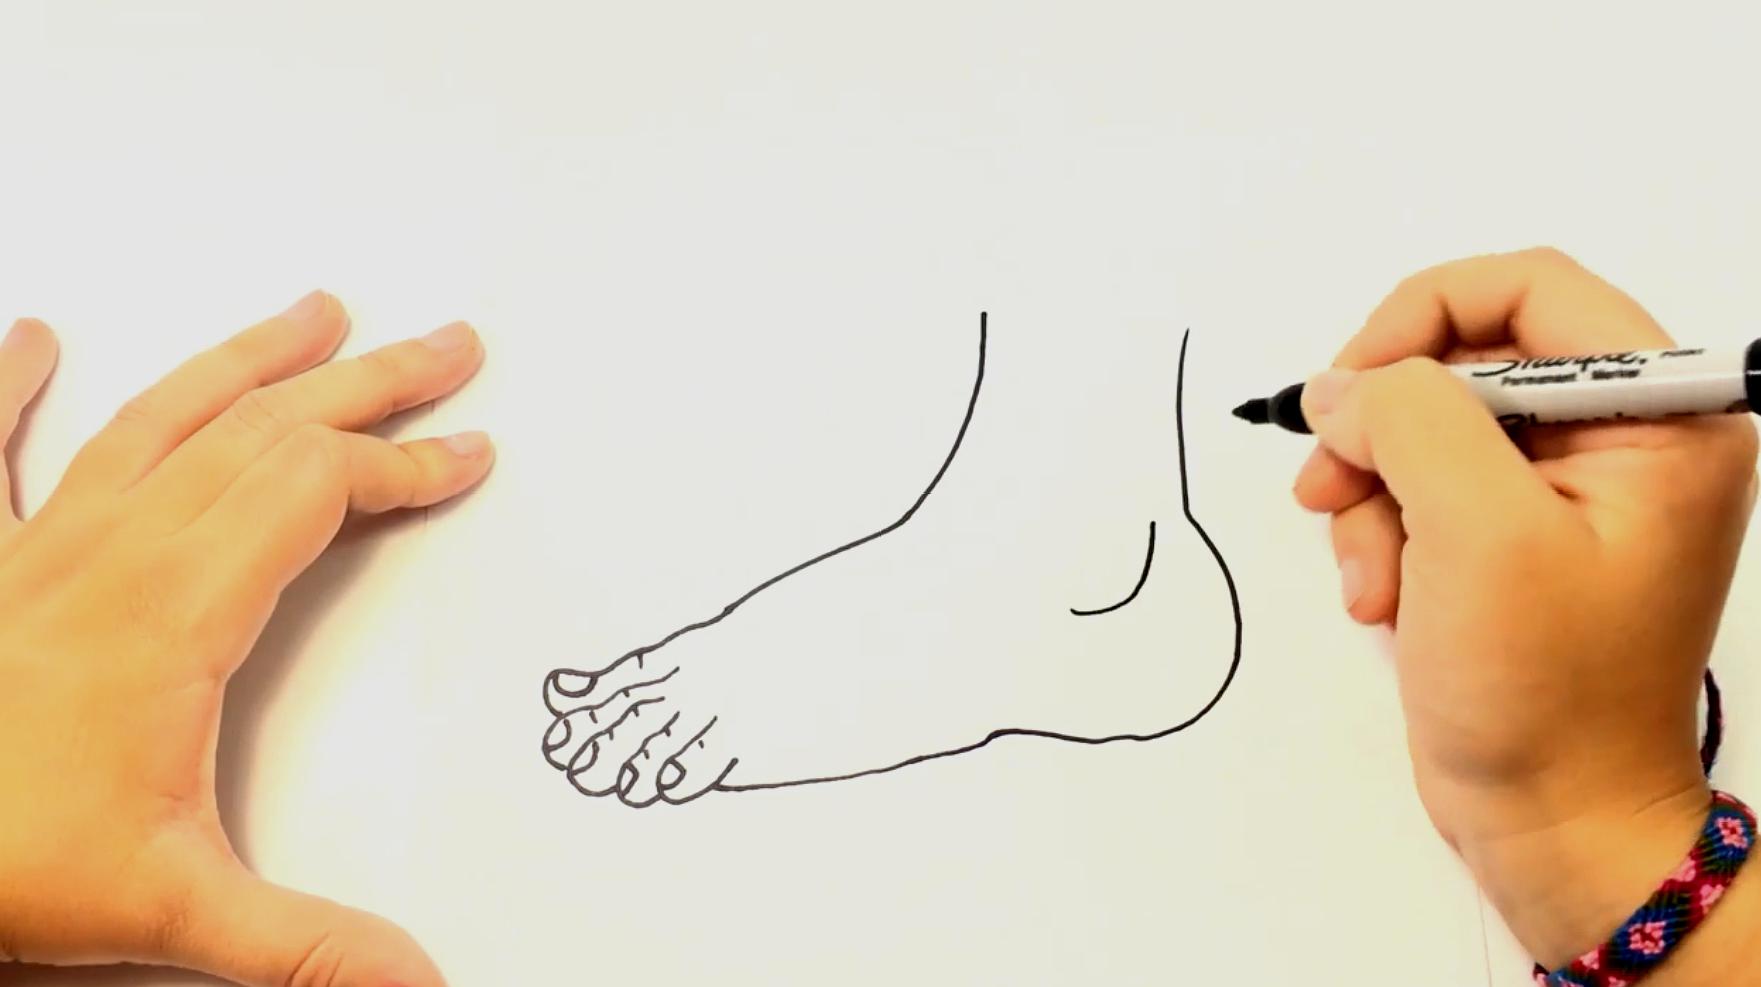 从大脚趾开始,画出脚丫的轮廓,然后再画出指甲就可以啦,两只脚画法